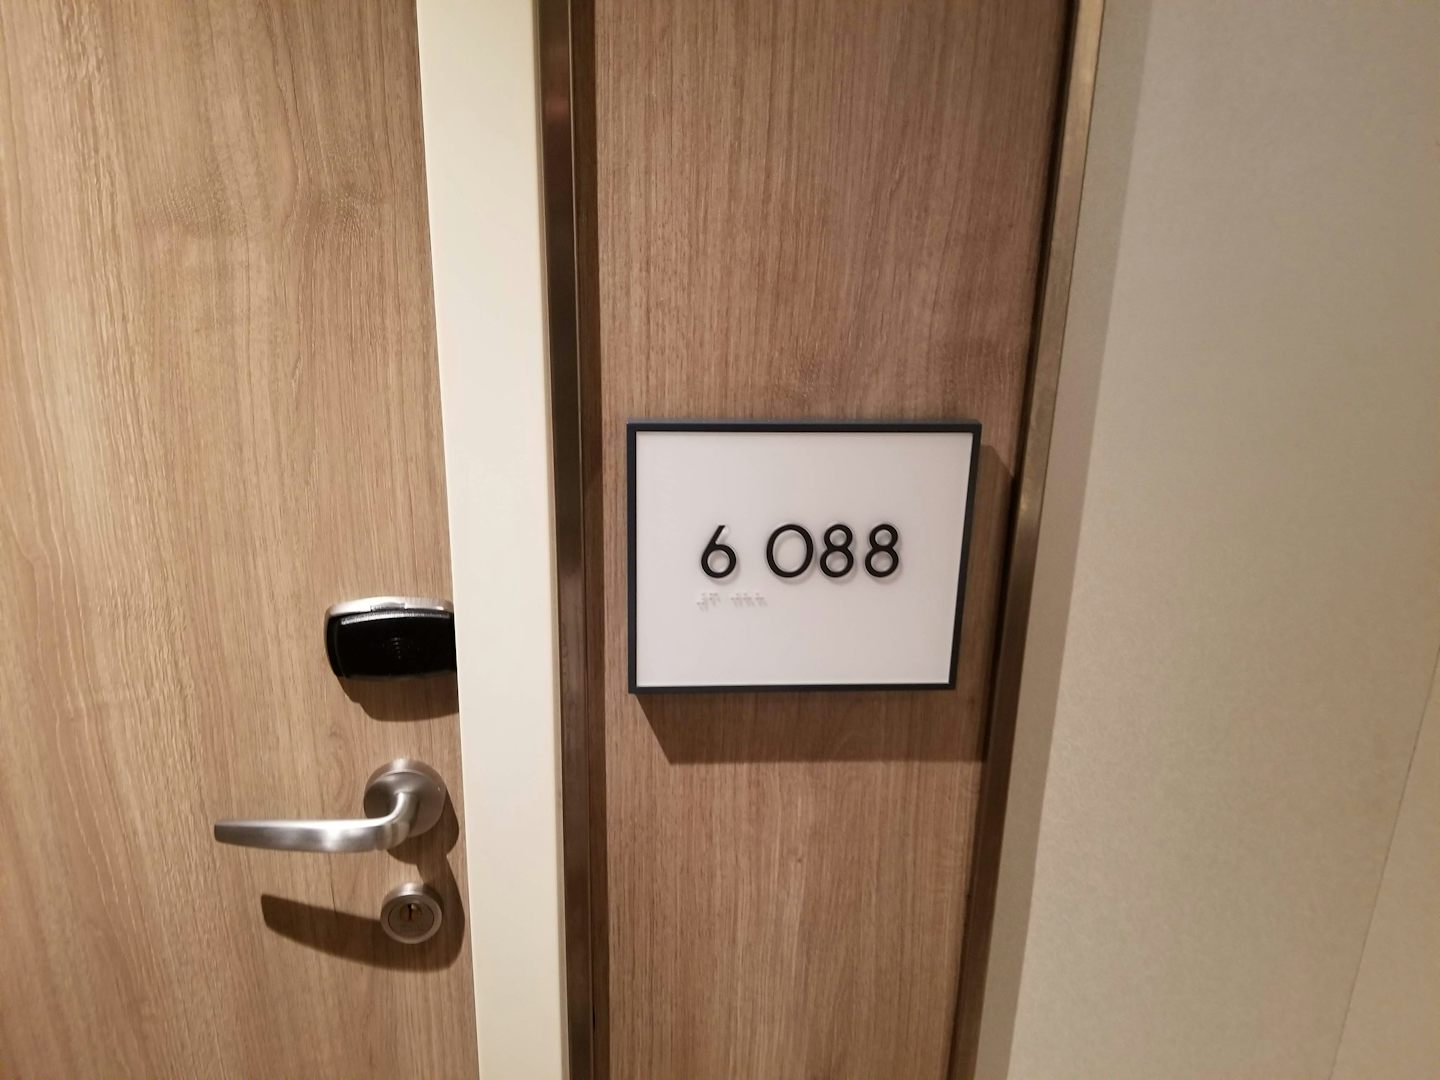 Cabin number.